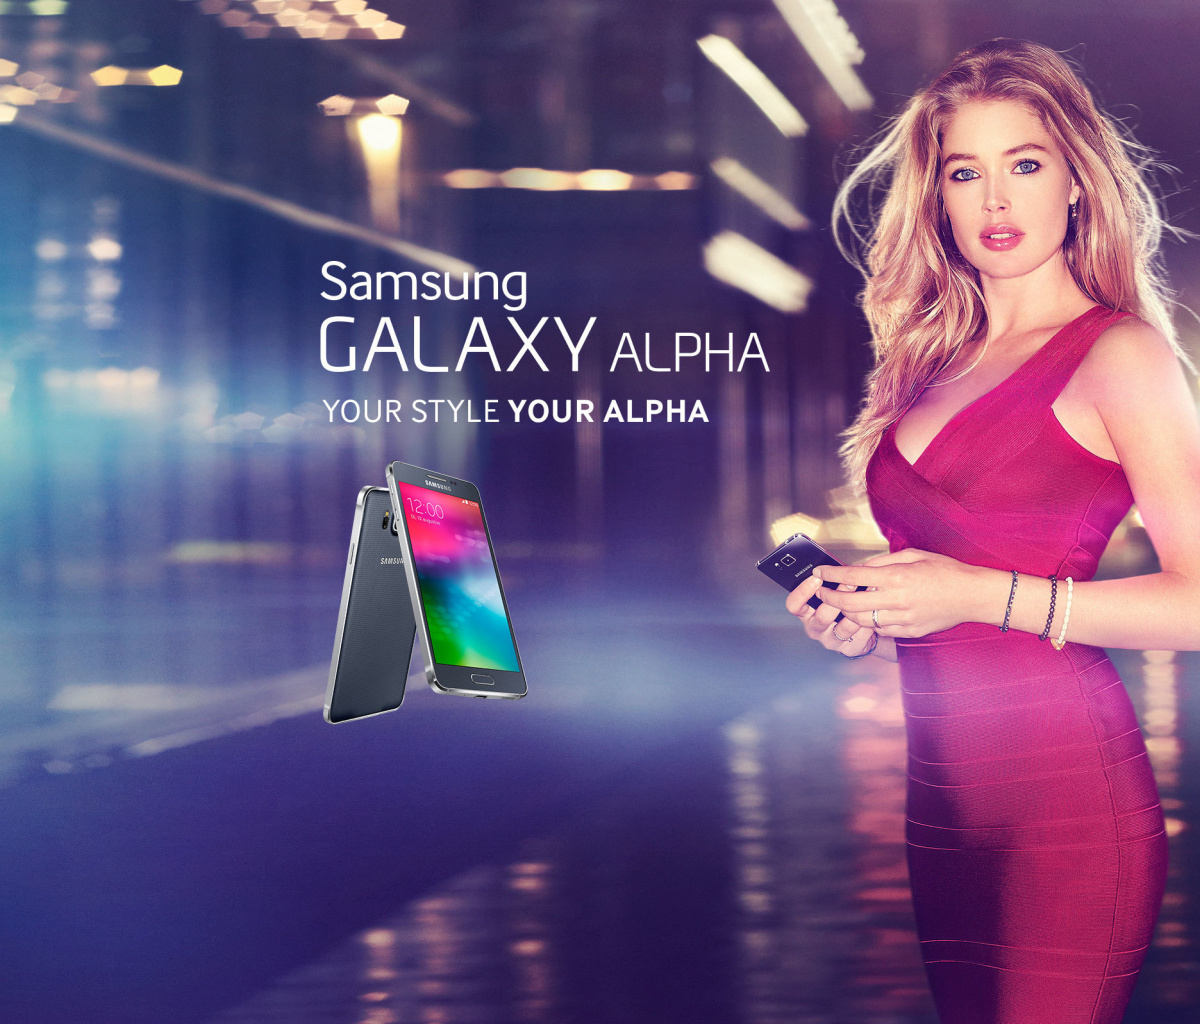 Samsung Galaxy Alpha Advertisement with Doutzen Kroes screenshot #1 1200x1024